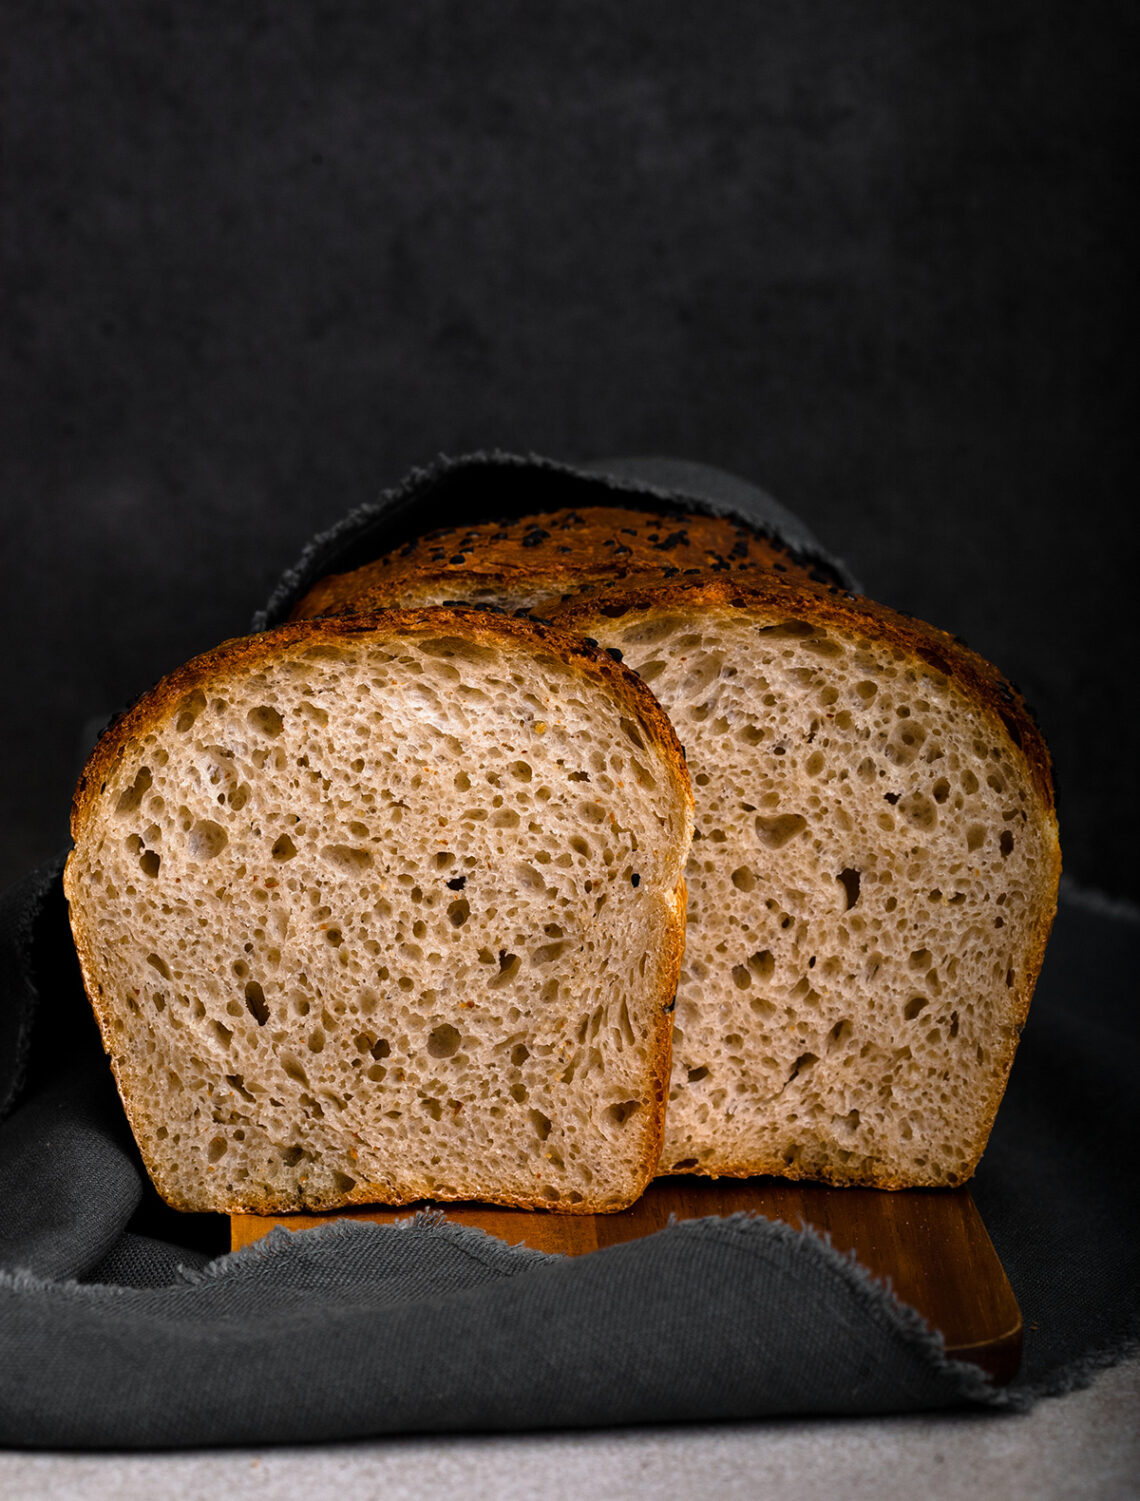 Simple spelt bread by Mykola Nevrev